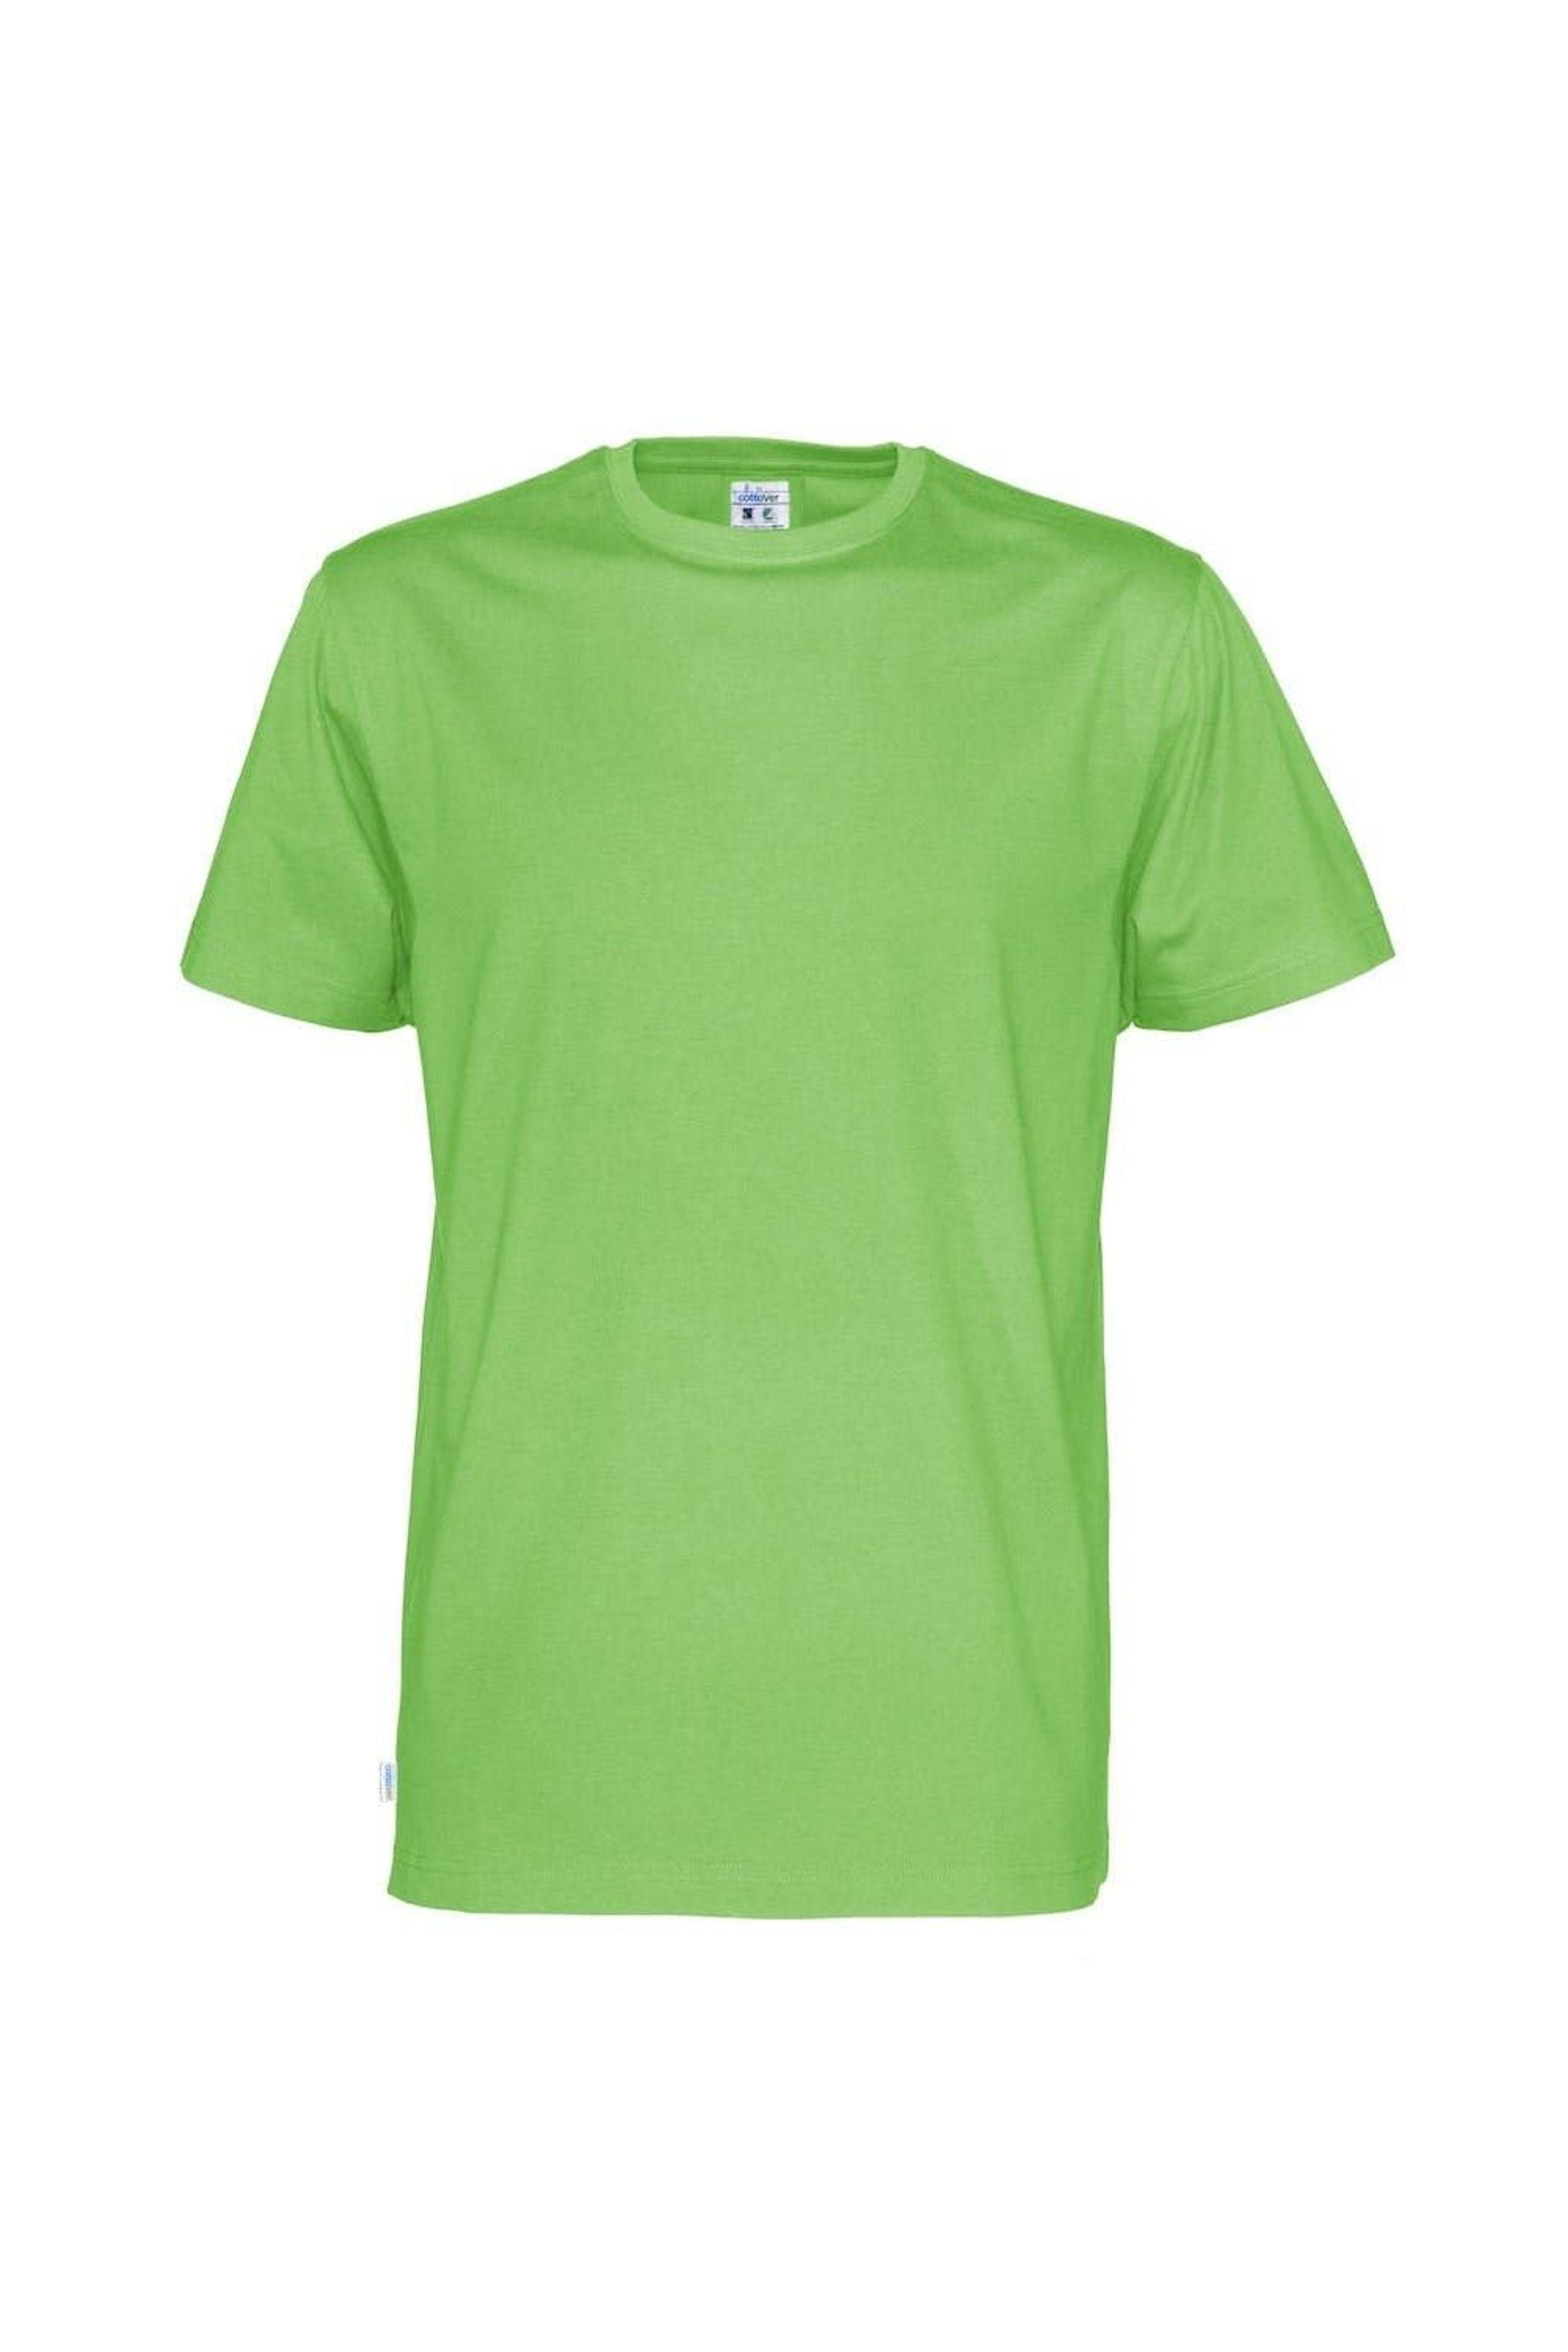 Tordenvejr frugter vitamin Cottover Modern T-shirt in Green for Men | Lyst